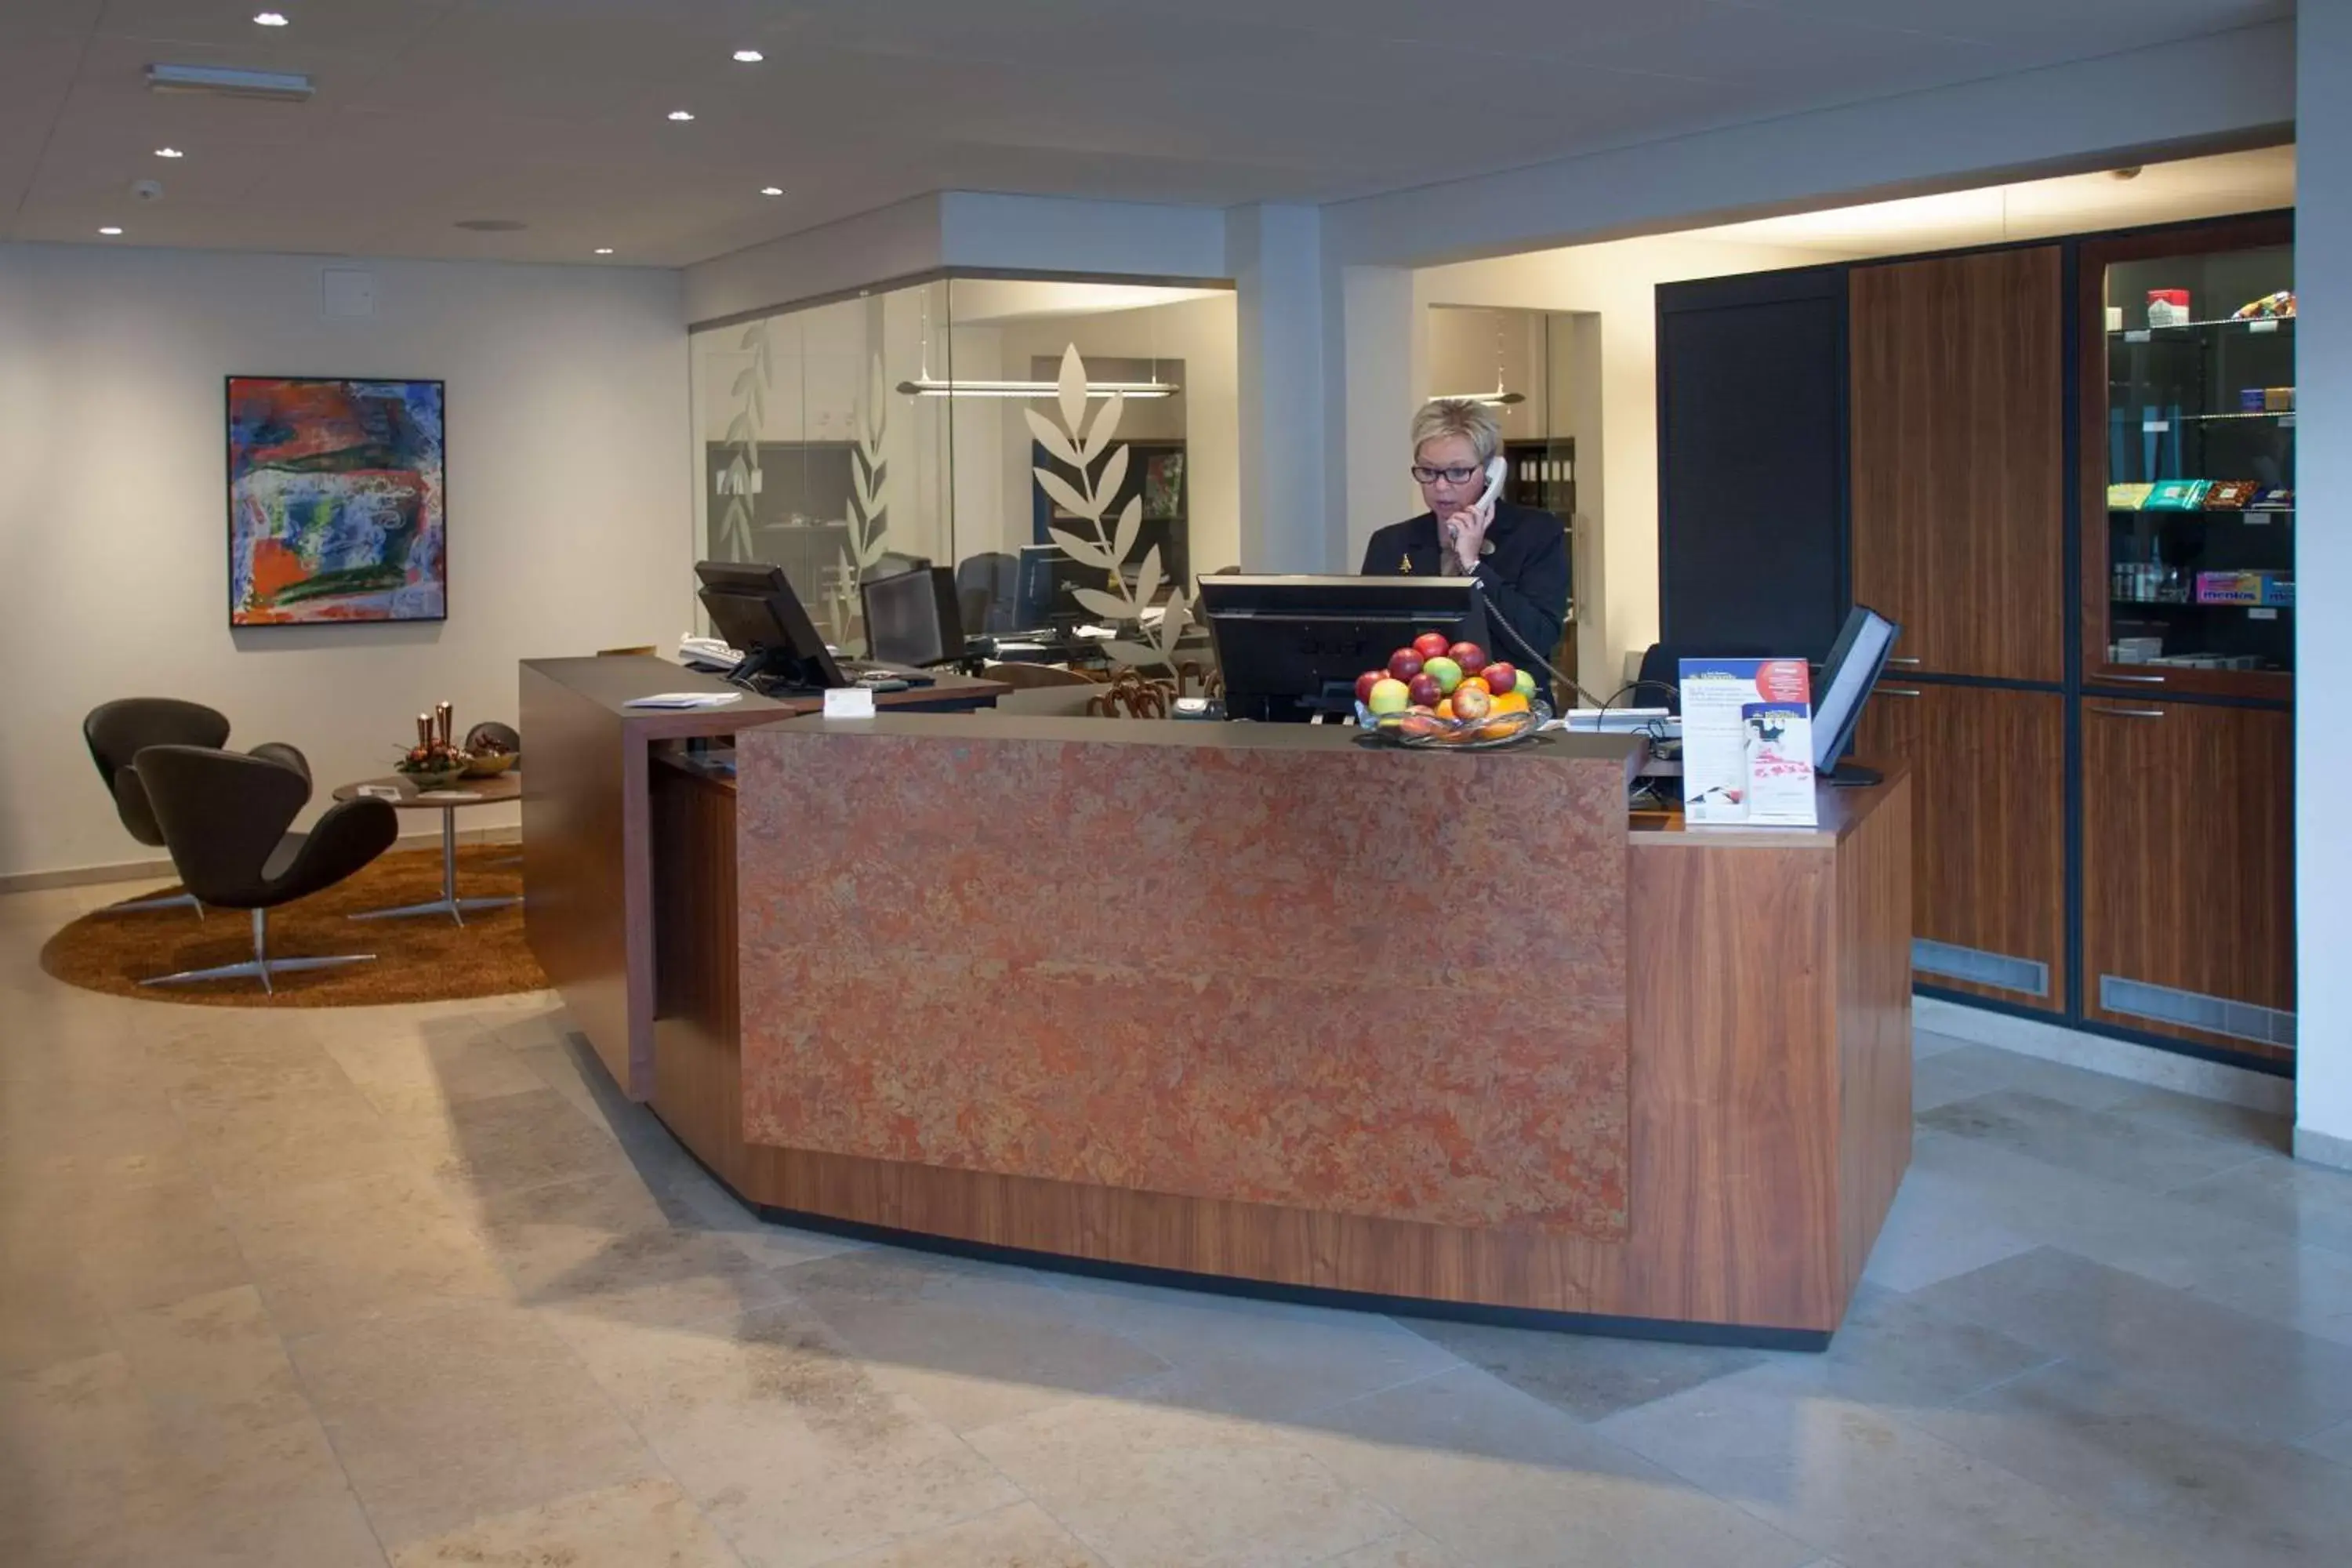 Lobby or reception, Lobby/Reception in Best Western Plus Hotel Eyde